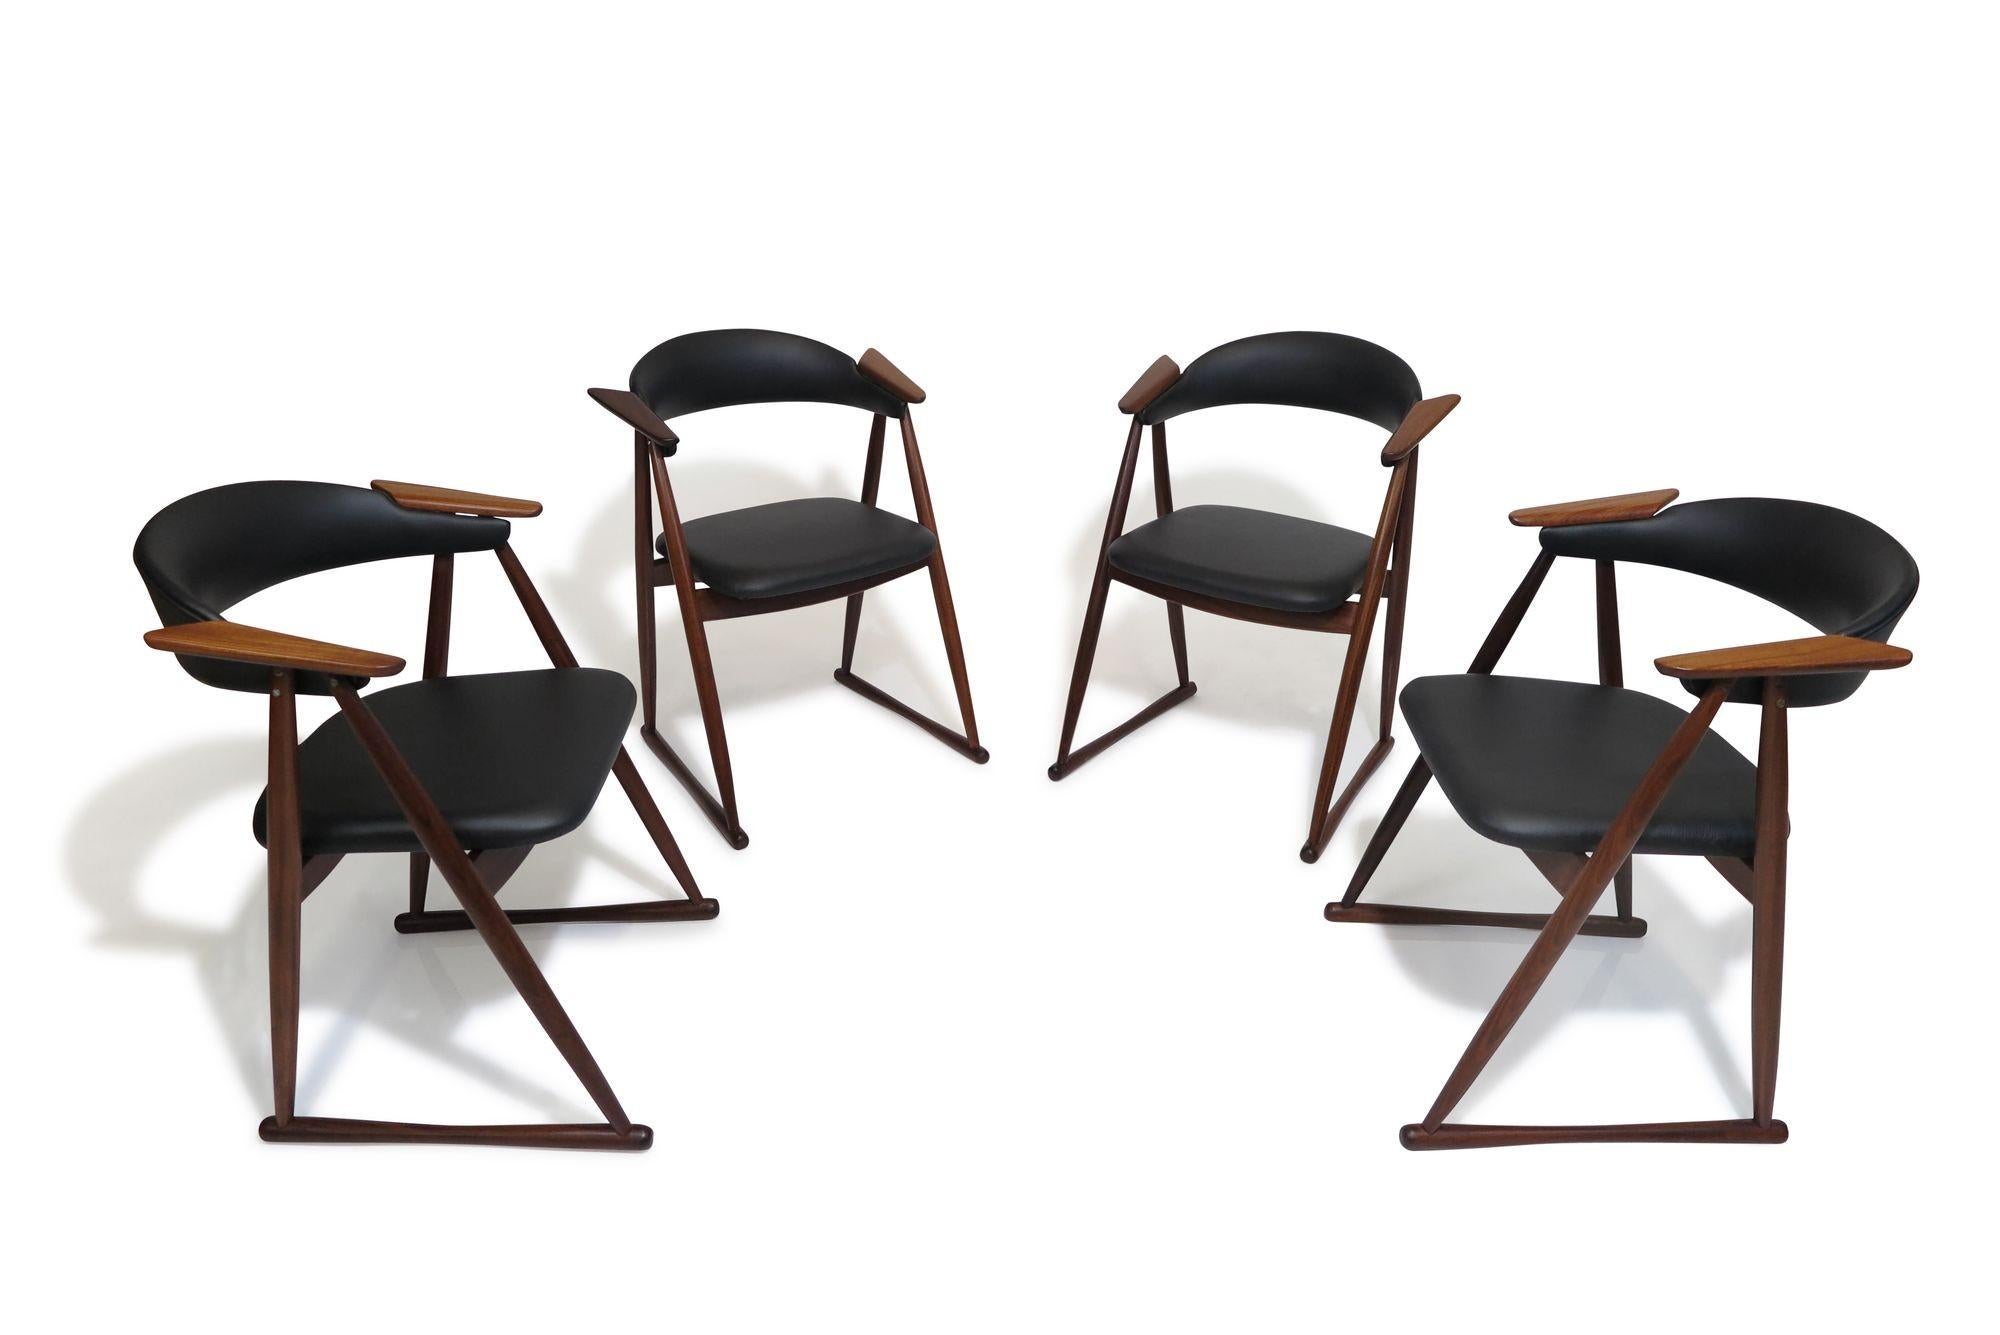 Ces rares chaises de salle à manger en teck, fabriquées en Scandinavie à la fin des années 1960, sont dotées d'une structure en teck massif, d'une assise rembourrée, d'un dossier incurvé et d'accoudoirs en bois flottant caractéristiques. Récemment